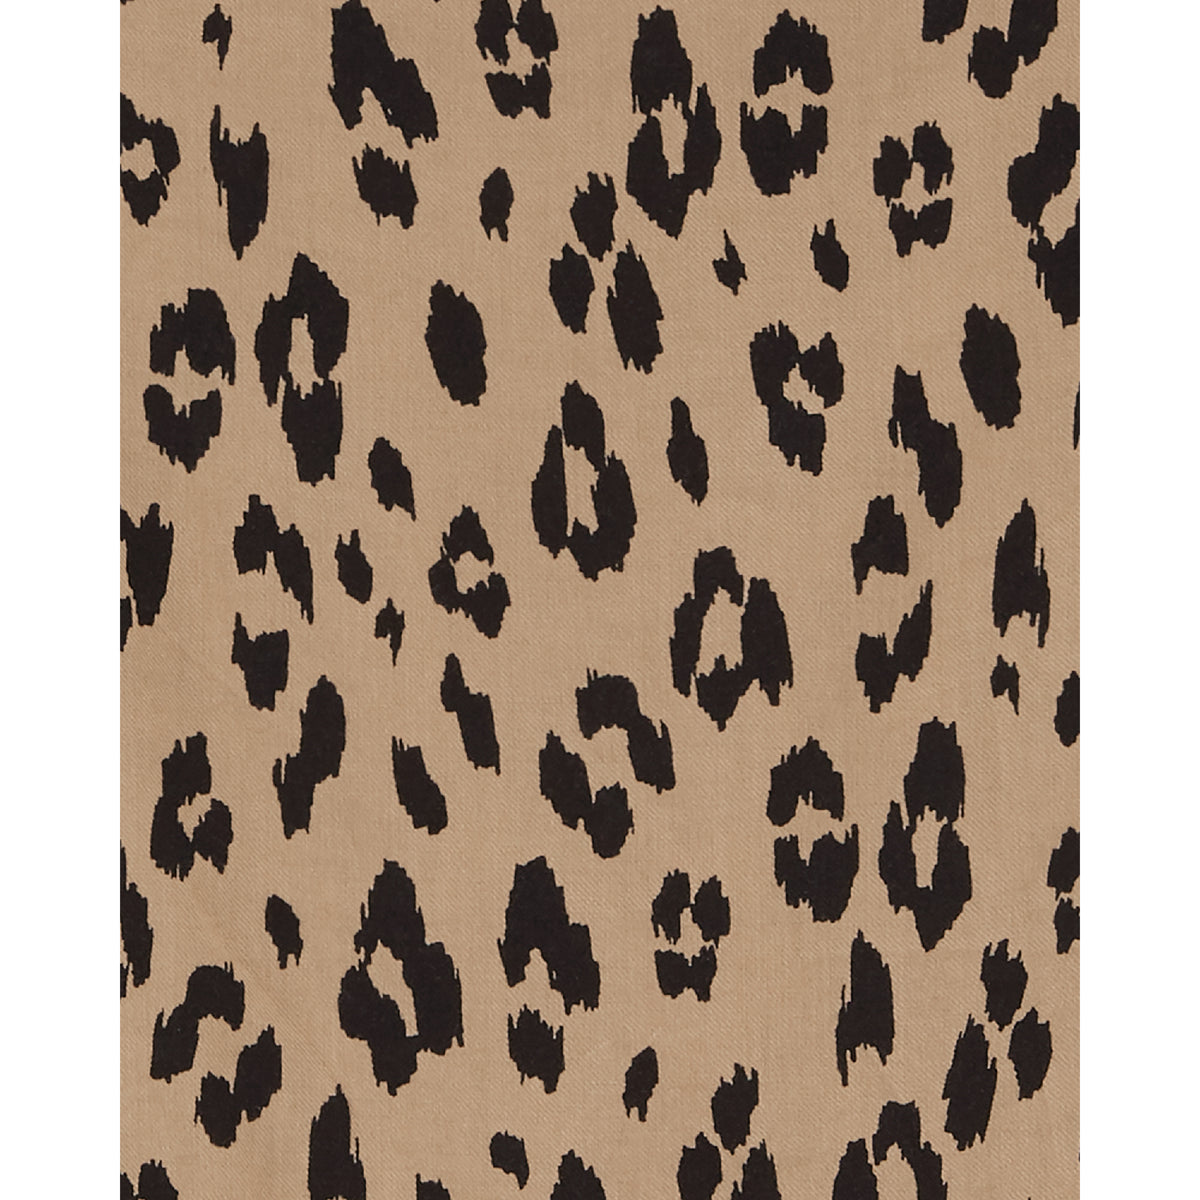 Carter's unique leopard print dress (6-8)